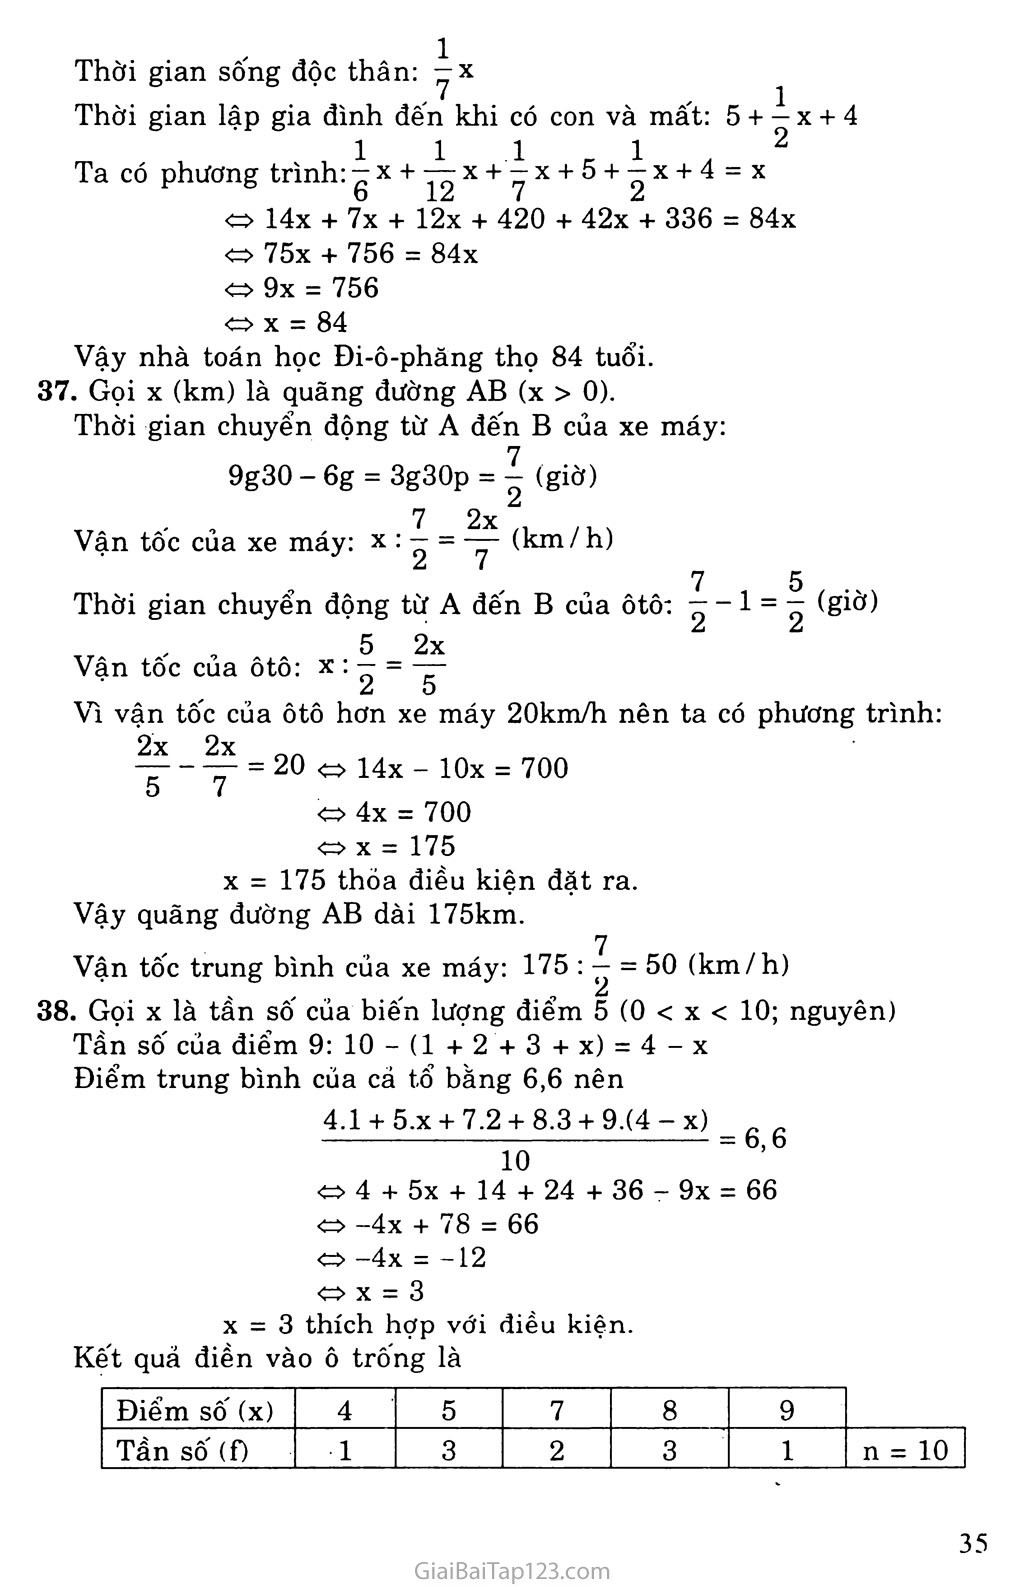 Bài 6. Giải bài toán bằng cách lập phương trình trang 4